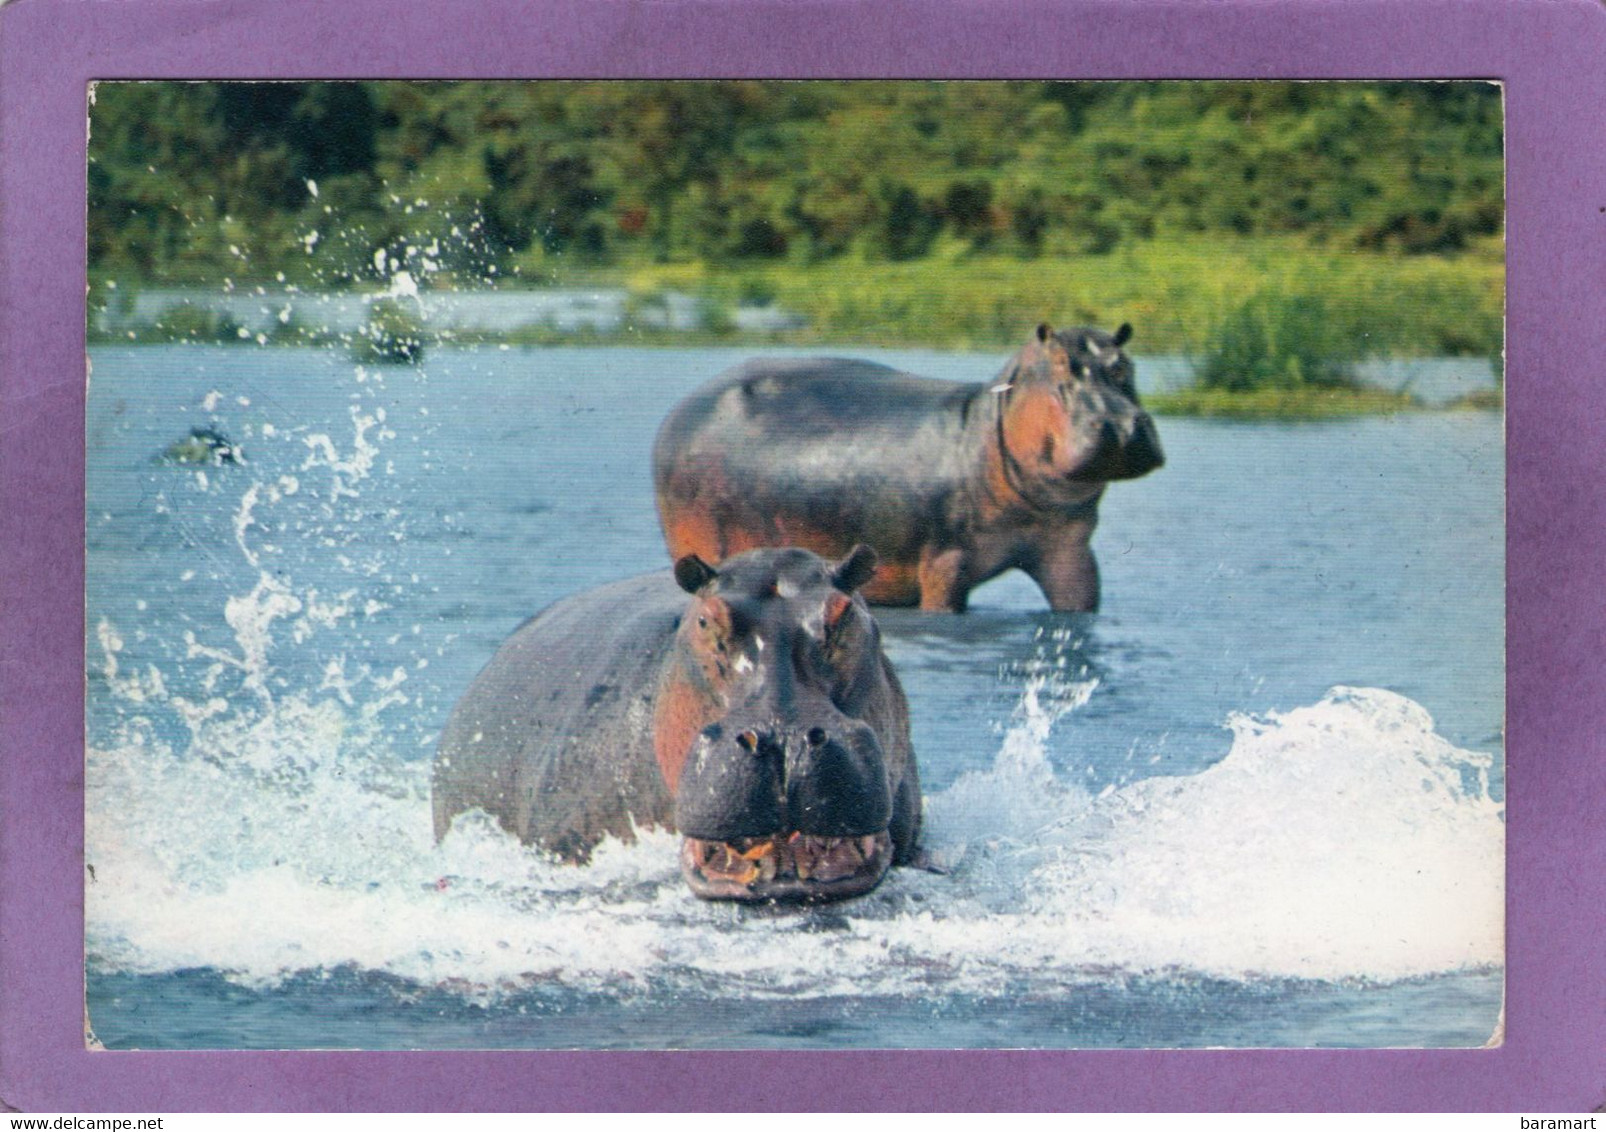 FAUNE AFRICAINE  Hippopotames  AFRICAN FAUNA  Hippopotmus - Ippopotami